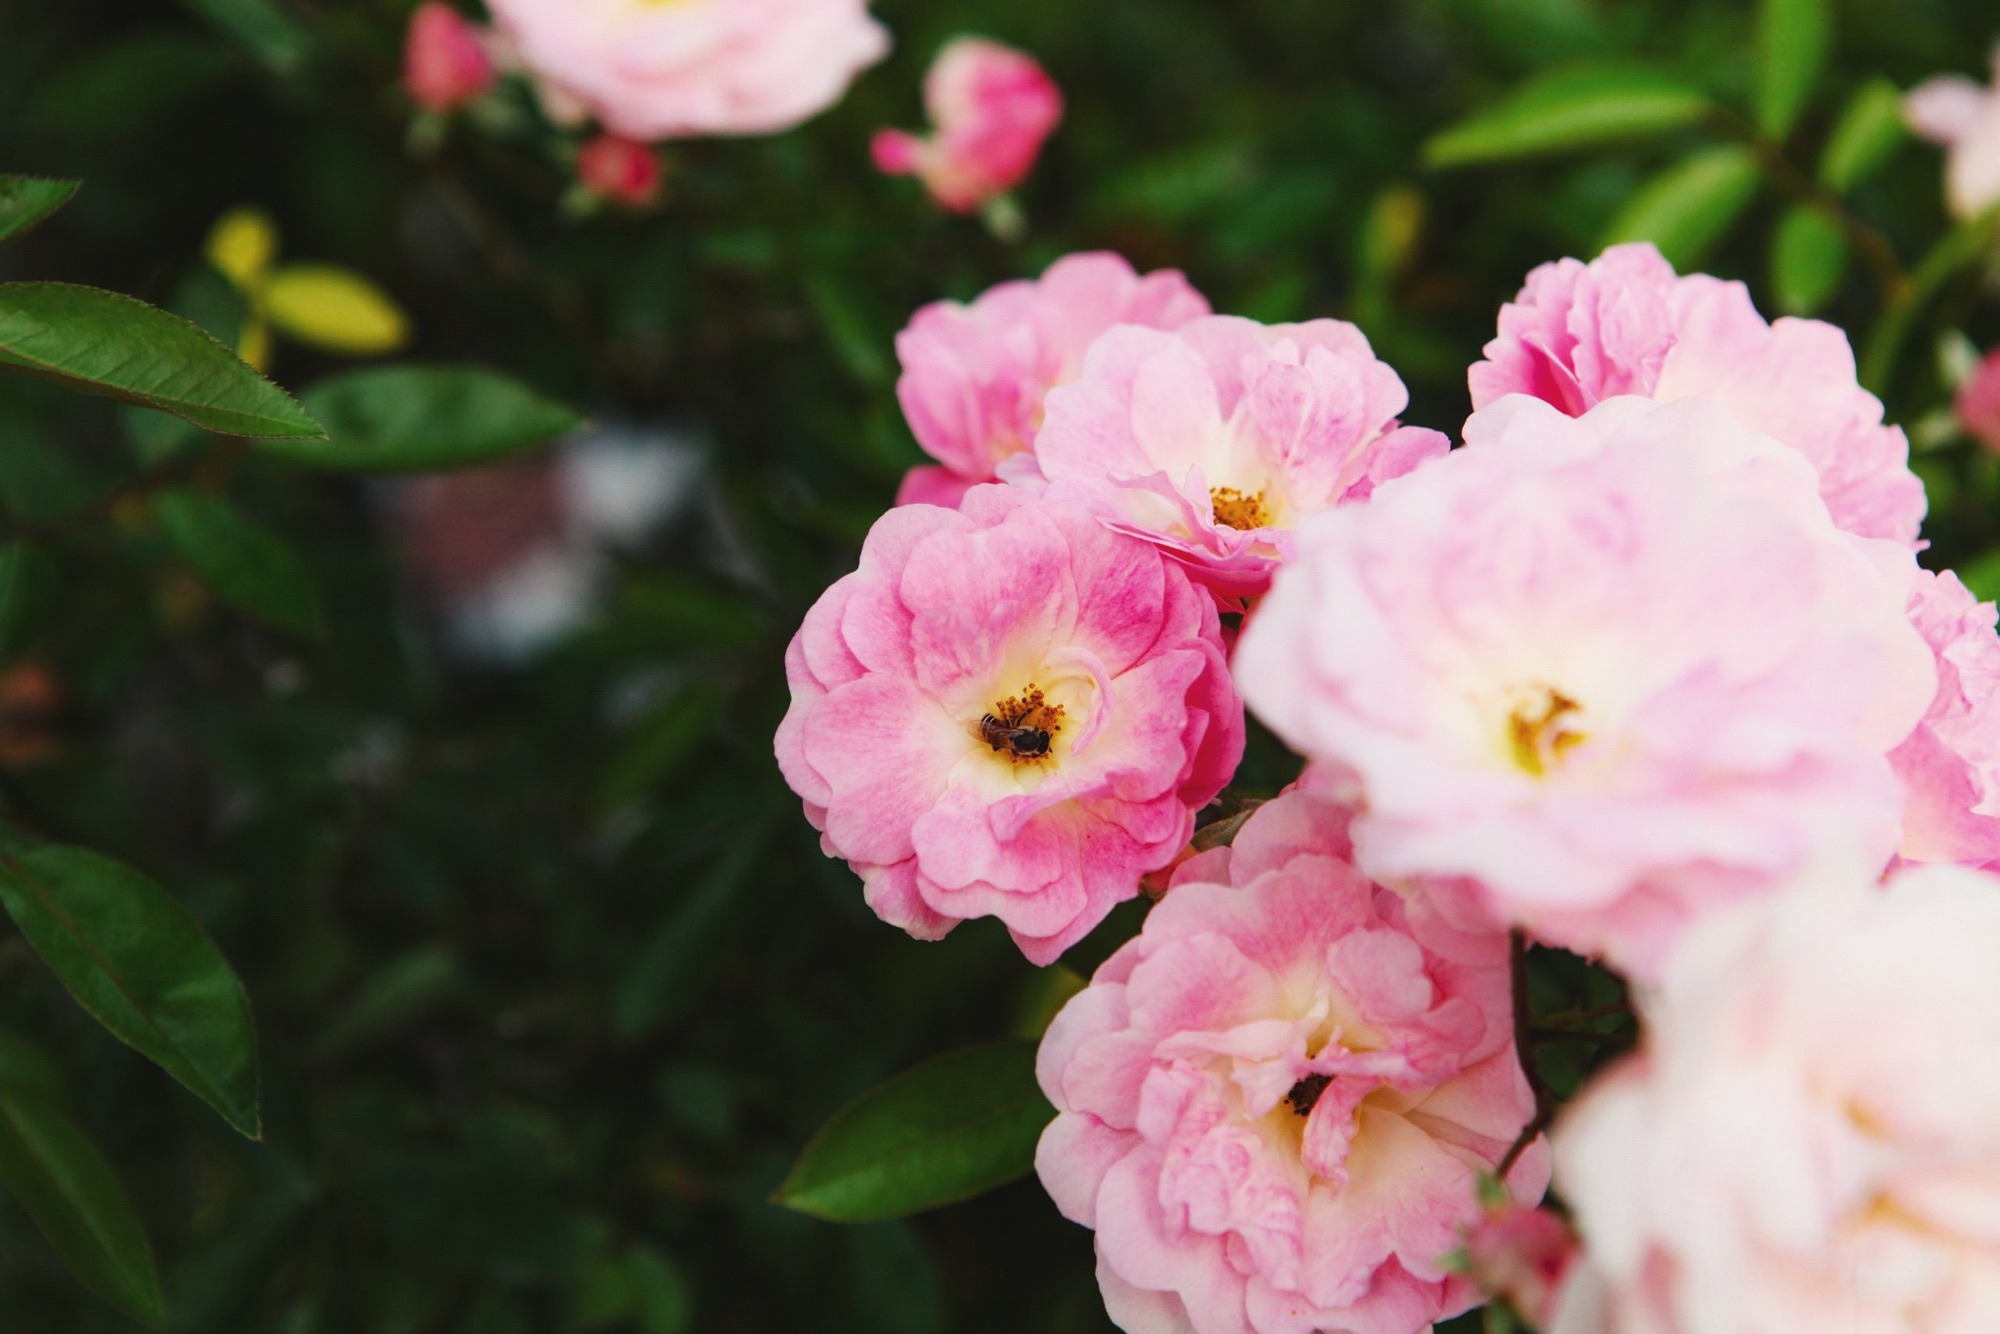 Trường đại học gây sốt với vườn hồng hàng trăm loại đẹp như cổ tích: Chỉ ngắm thôi cũng đã đầy cảm hứng học tập- Ảnh 5.